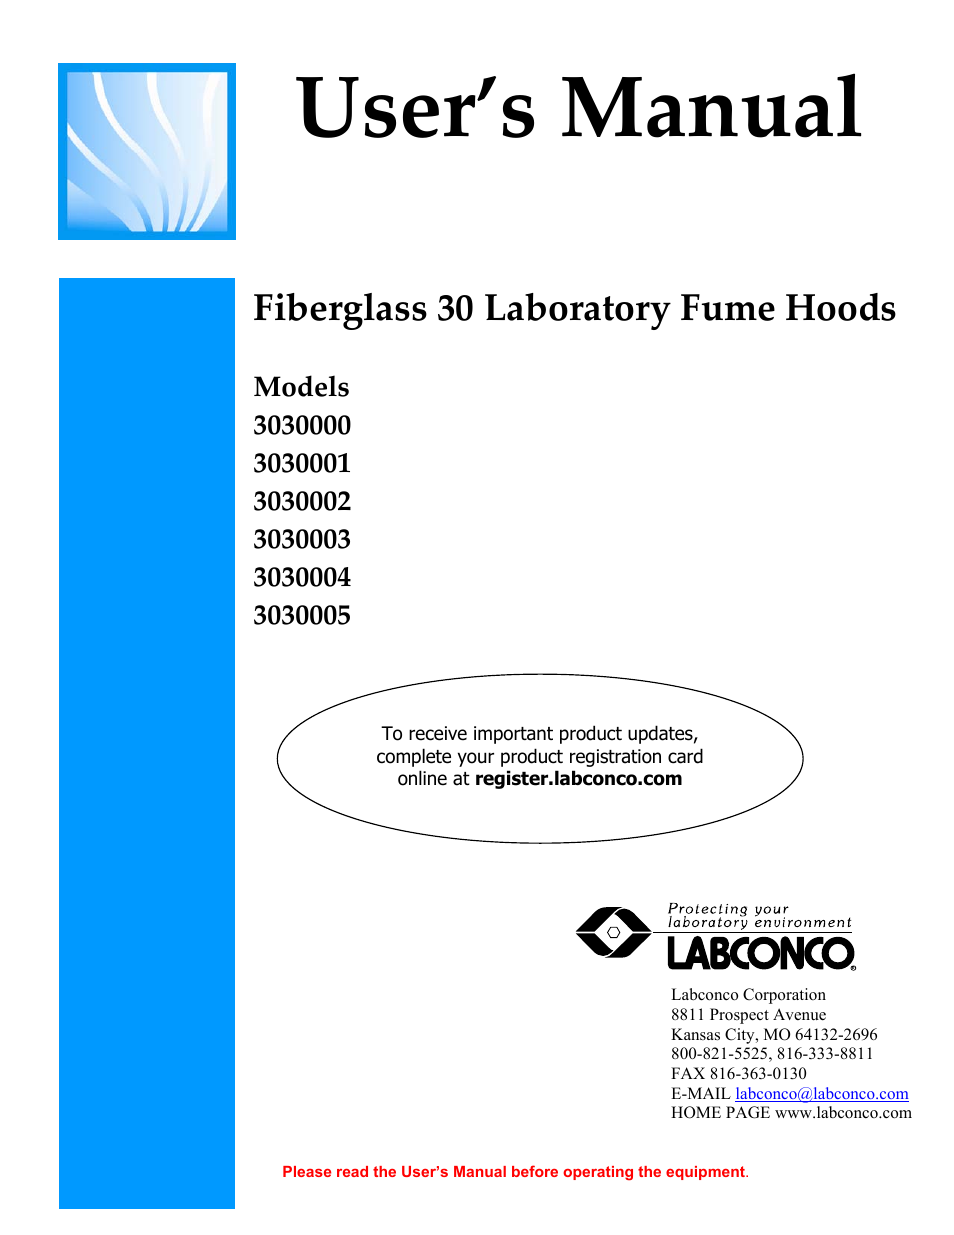 Fiberglass 30 Laboratory Fume Hoods 3030005